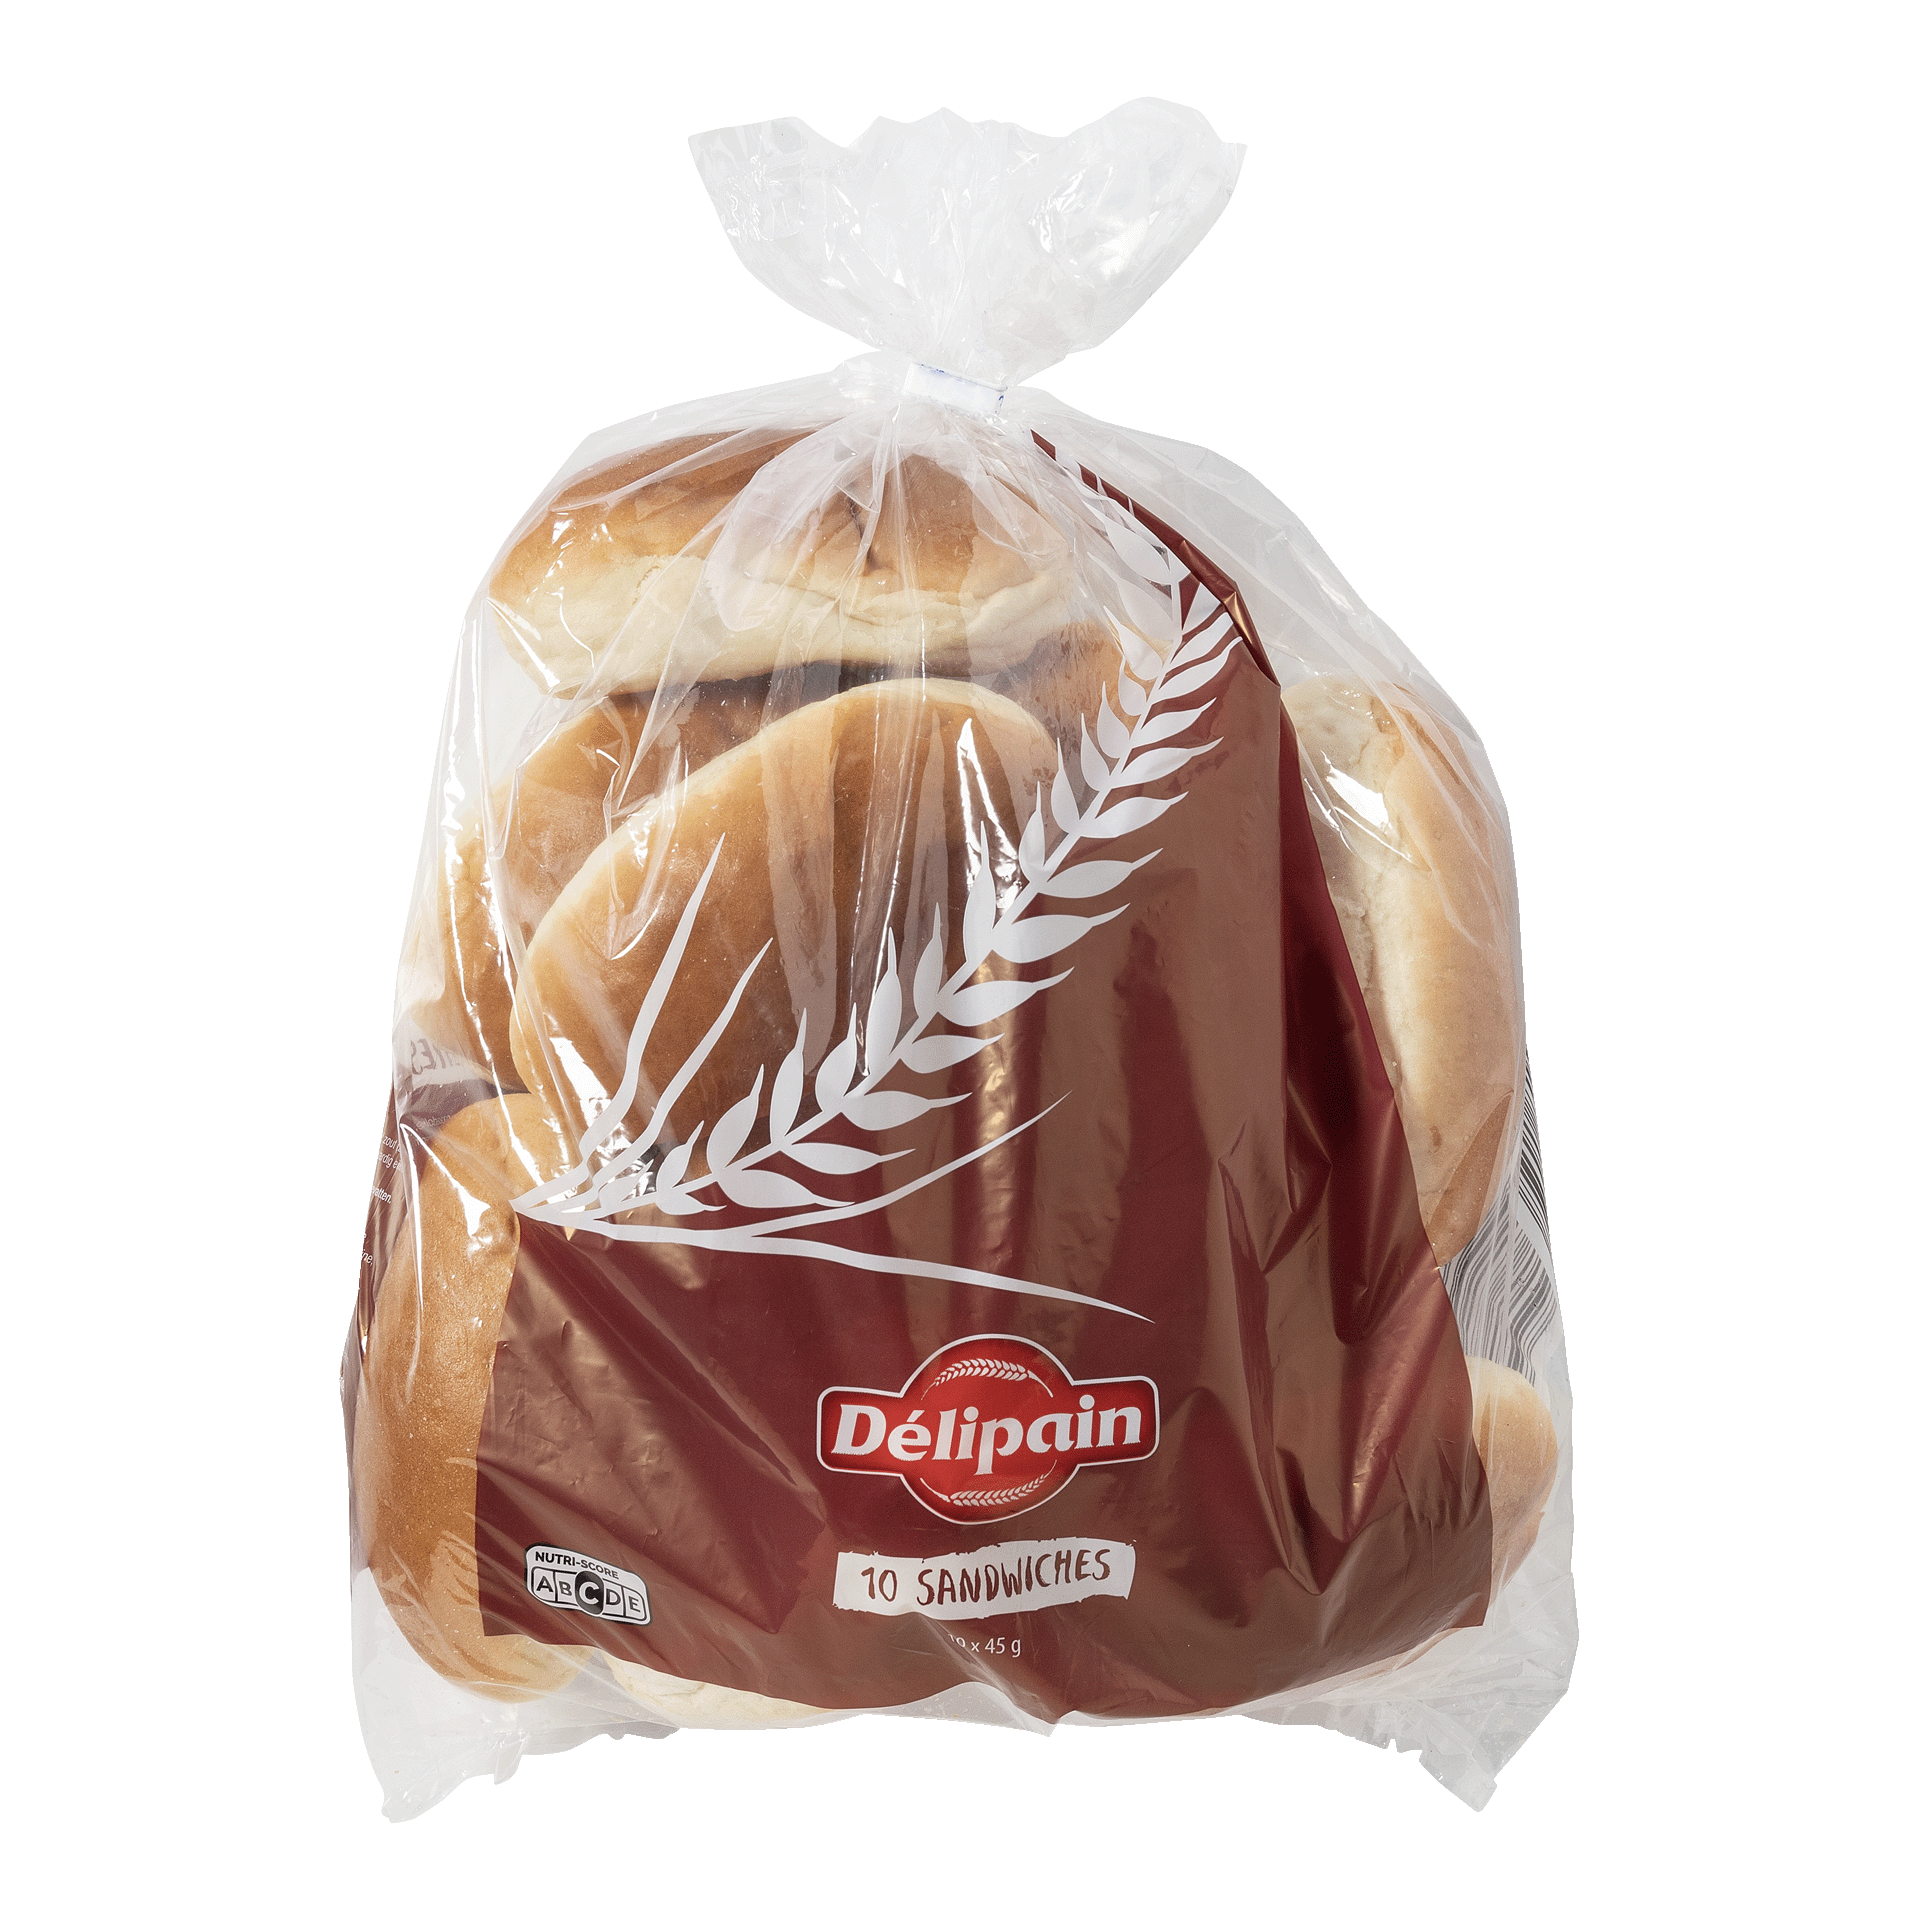 DÉLIPAIN® Sandwiches, 10 st. kopen ALDI België